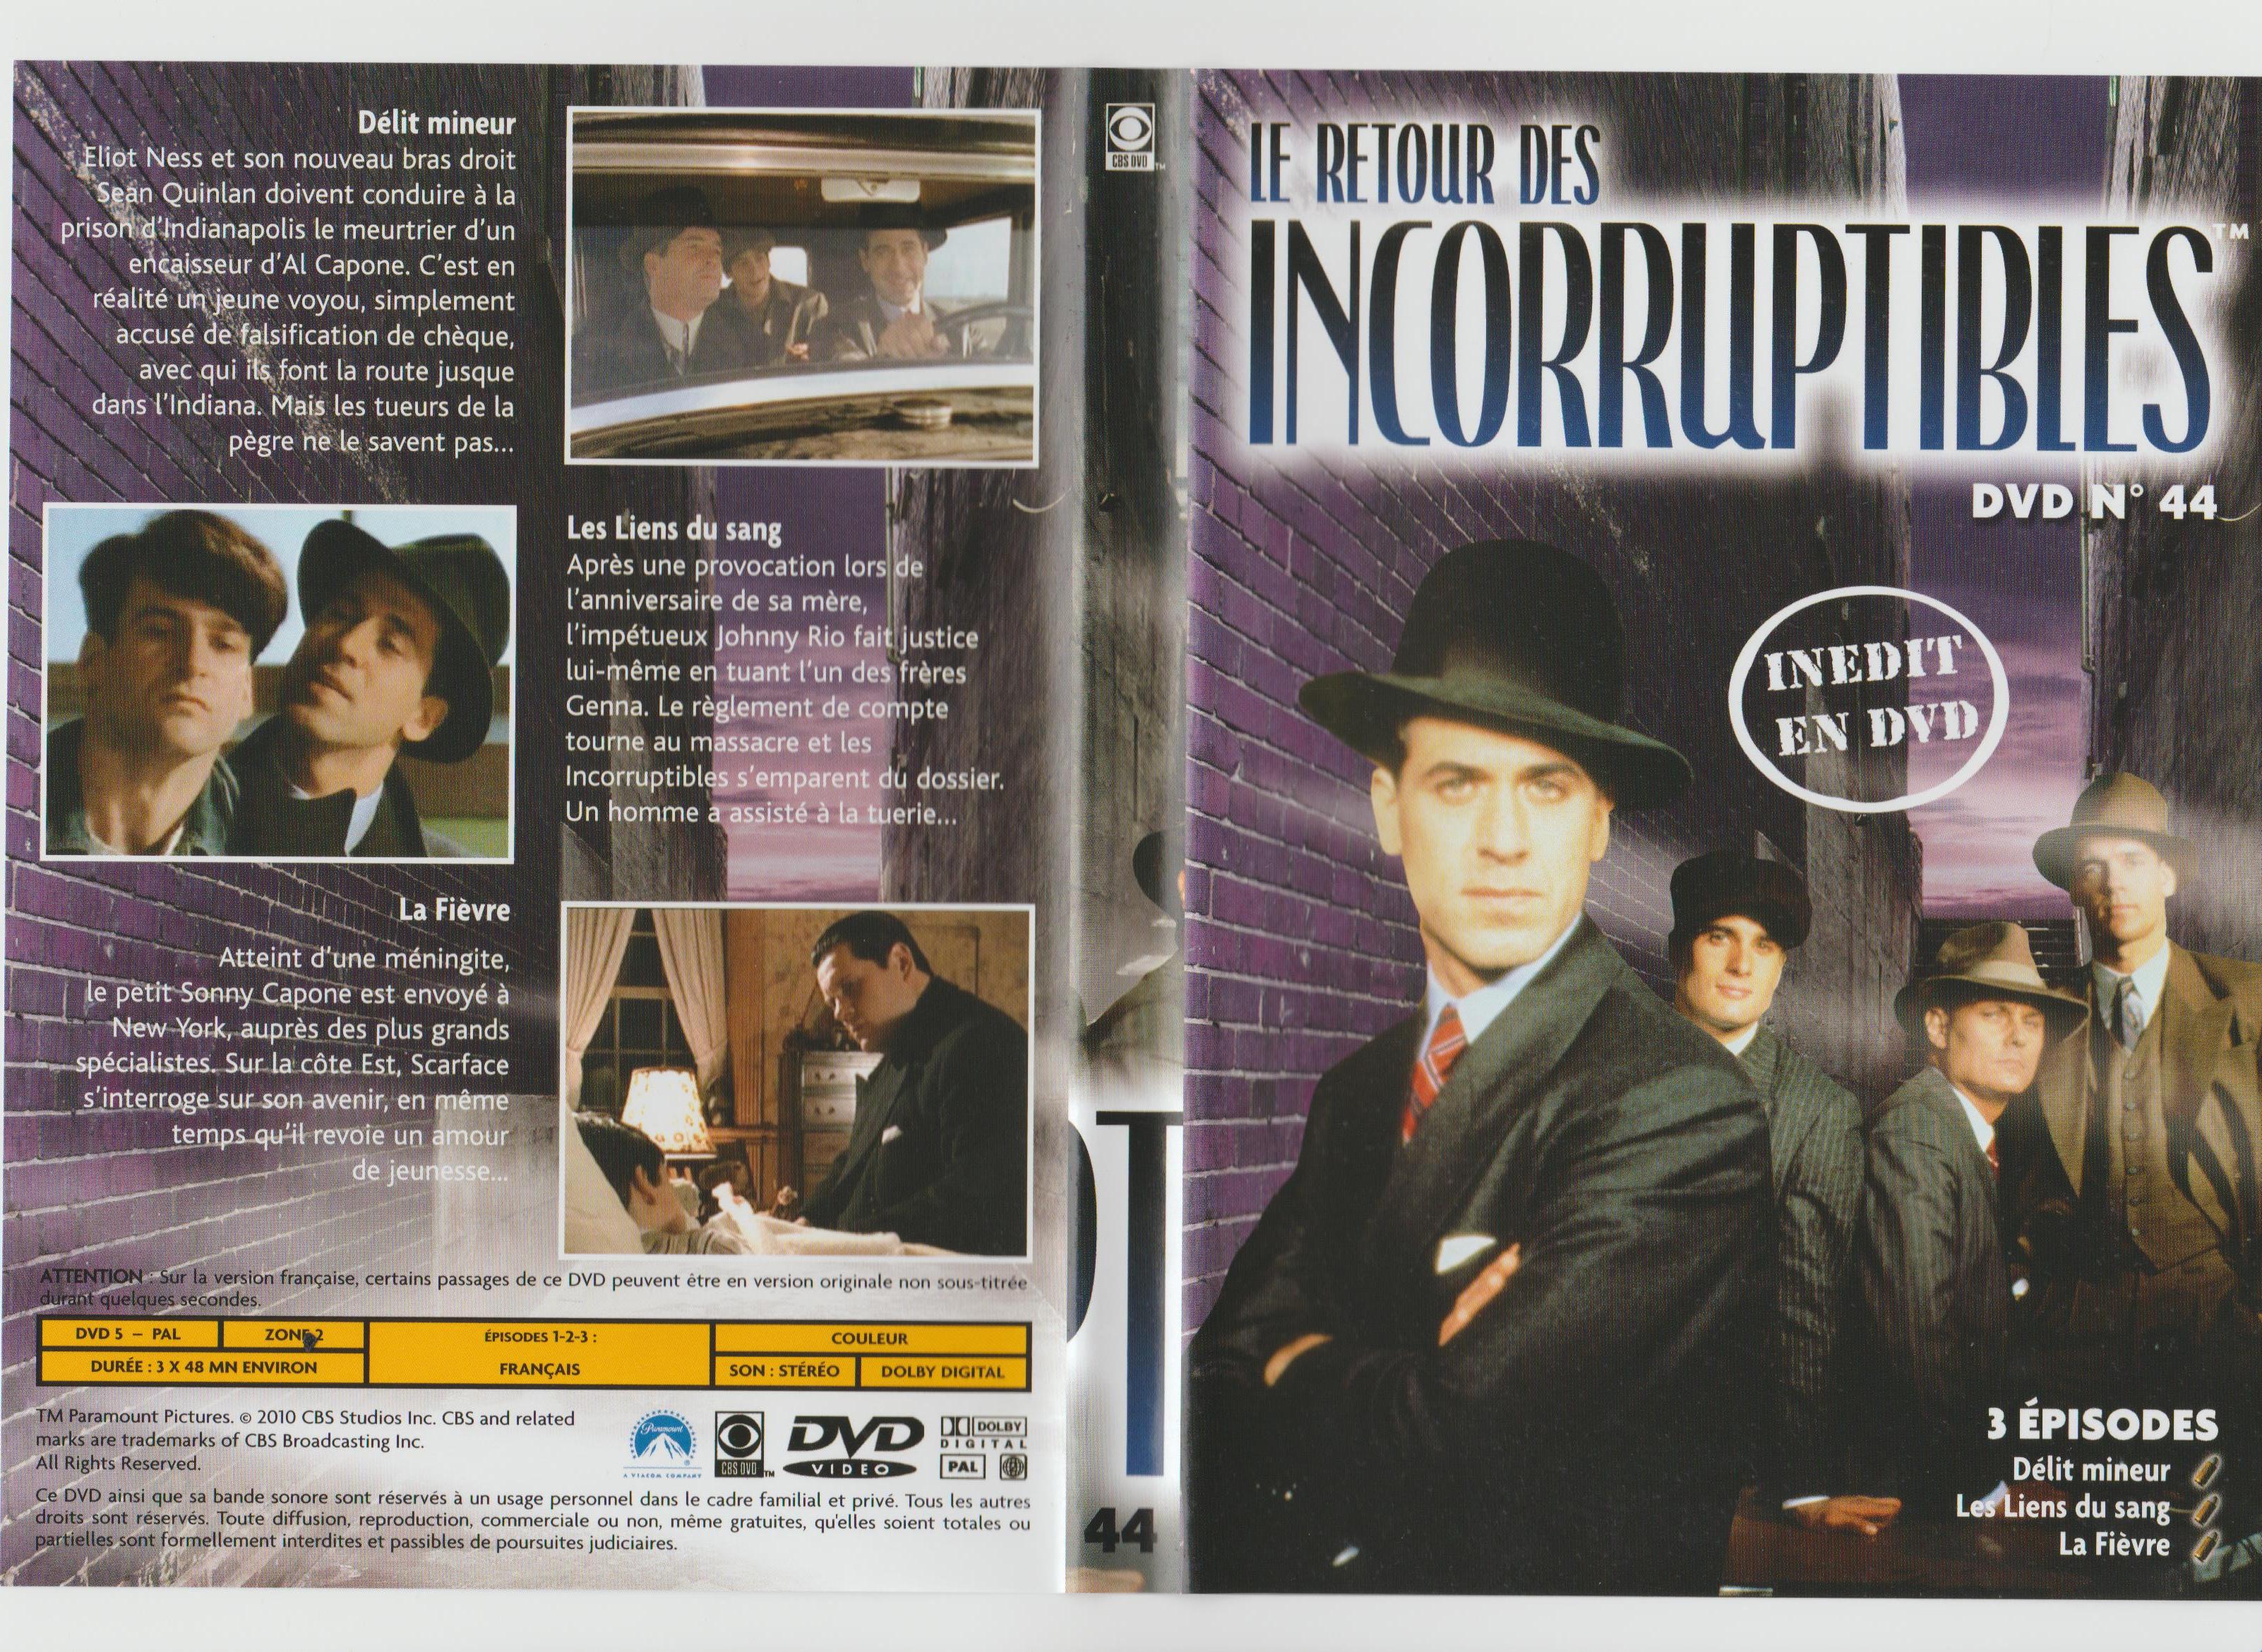 Jaquette DVD Le retour des incorruptibles DVD 44